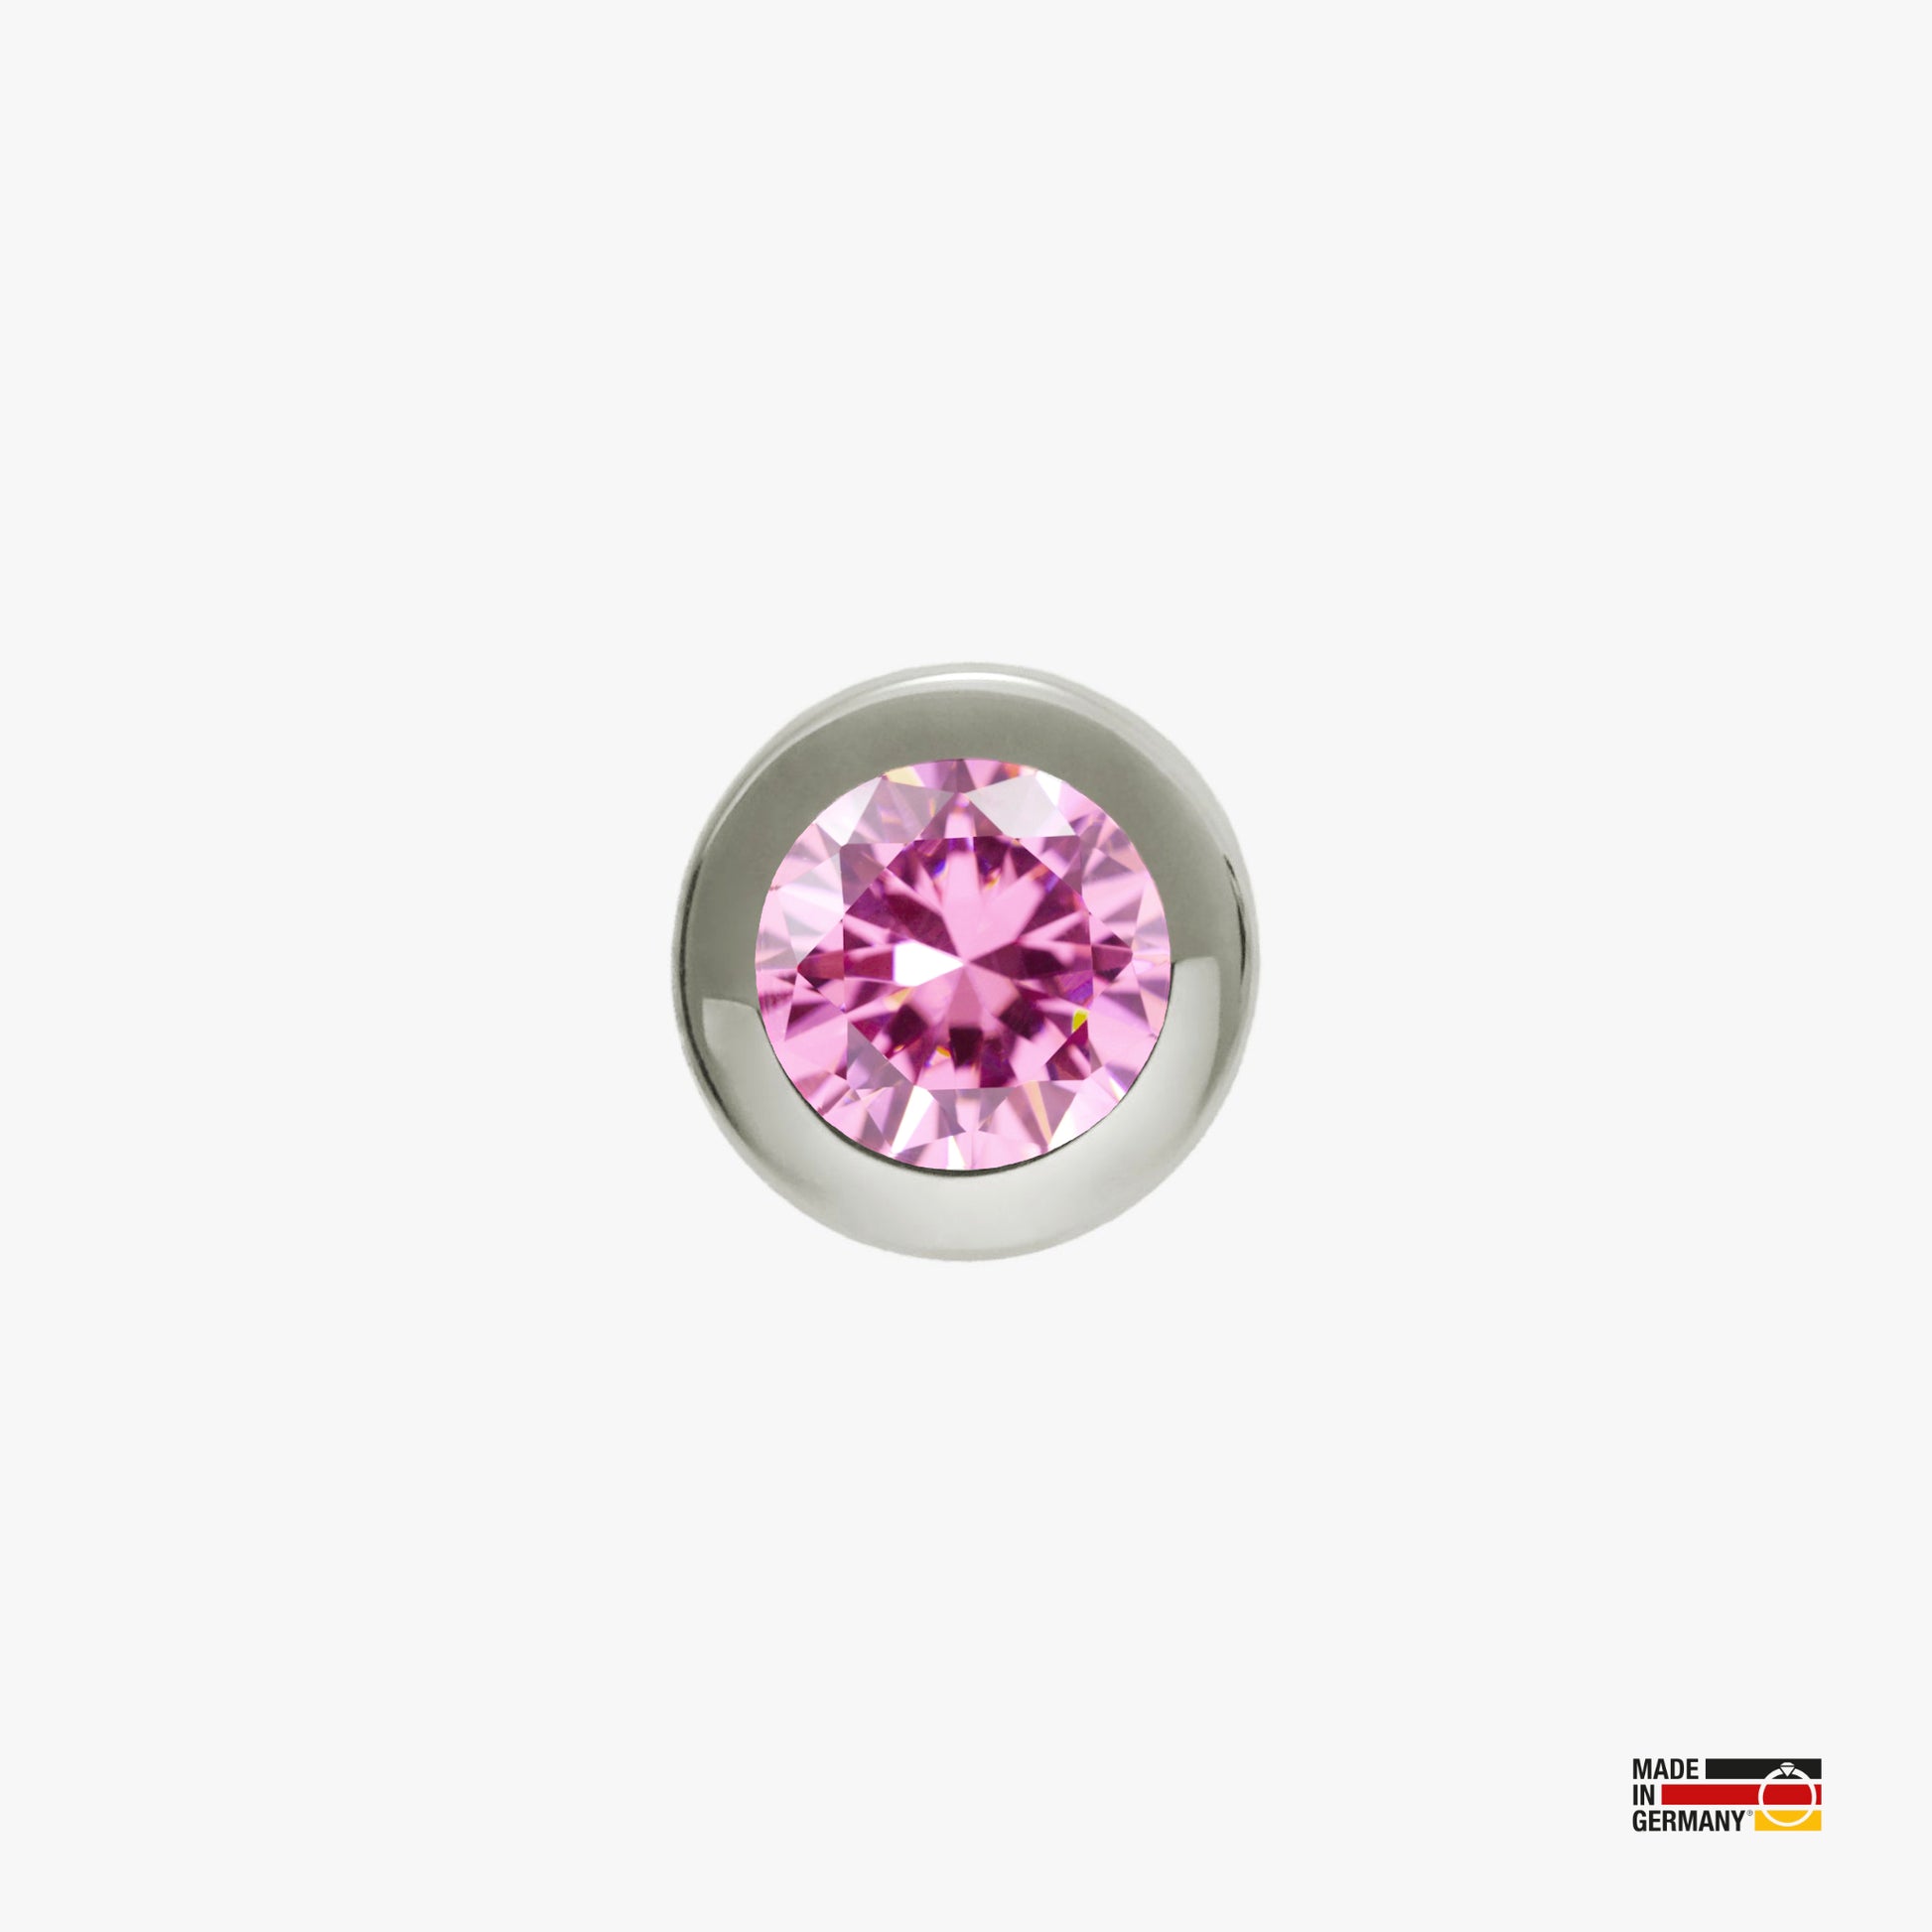 Pamoro® Charm für Apple Watch Sportarmbänder - Schmuck in echt Silber rhodiniert mit Cubic Zirkonia in pink - Schraubmechanik